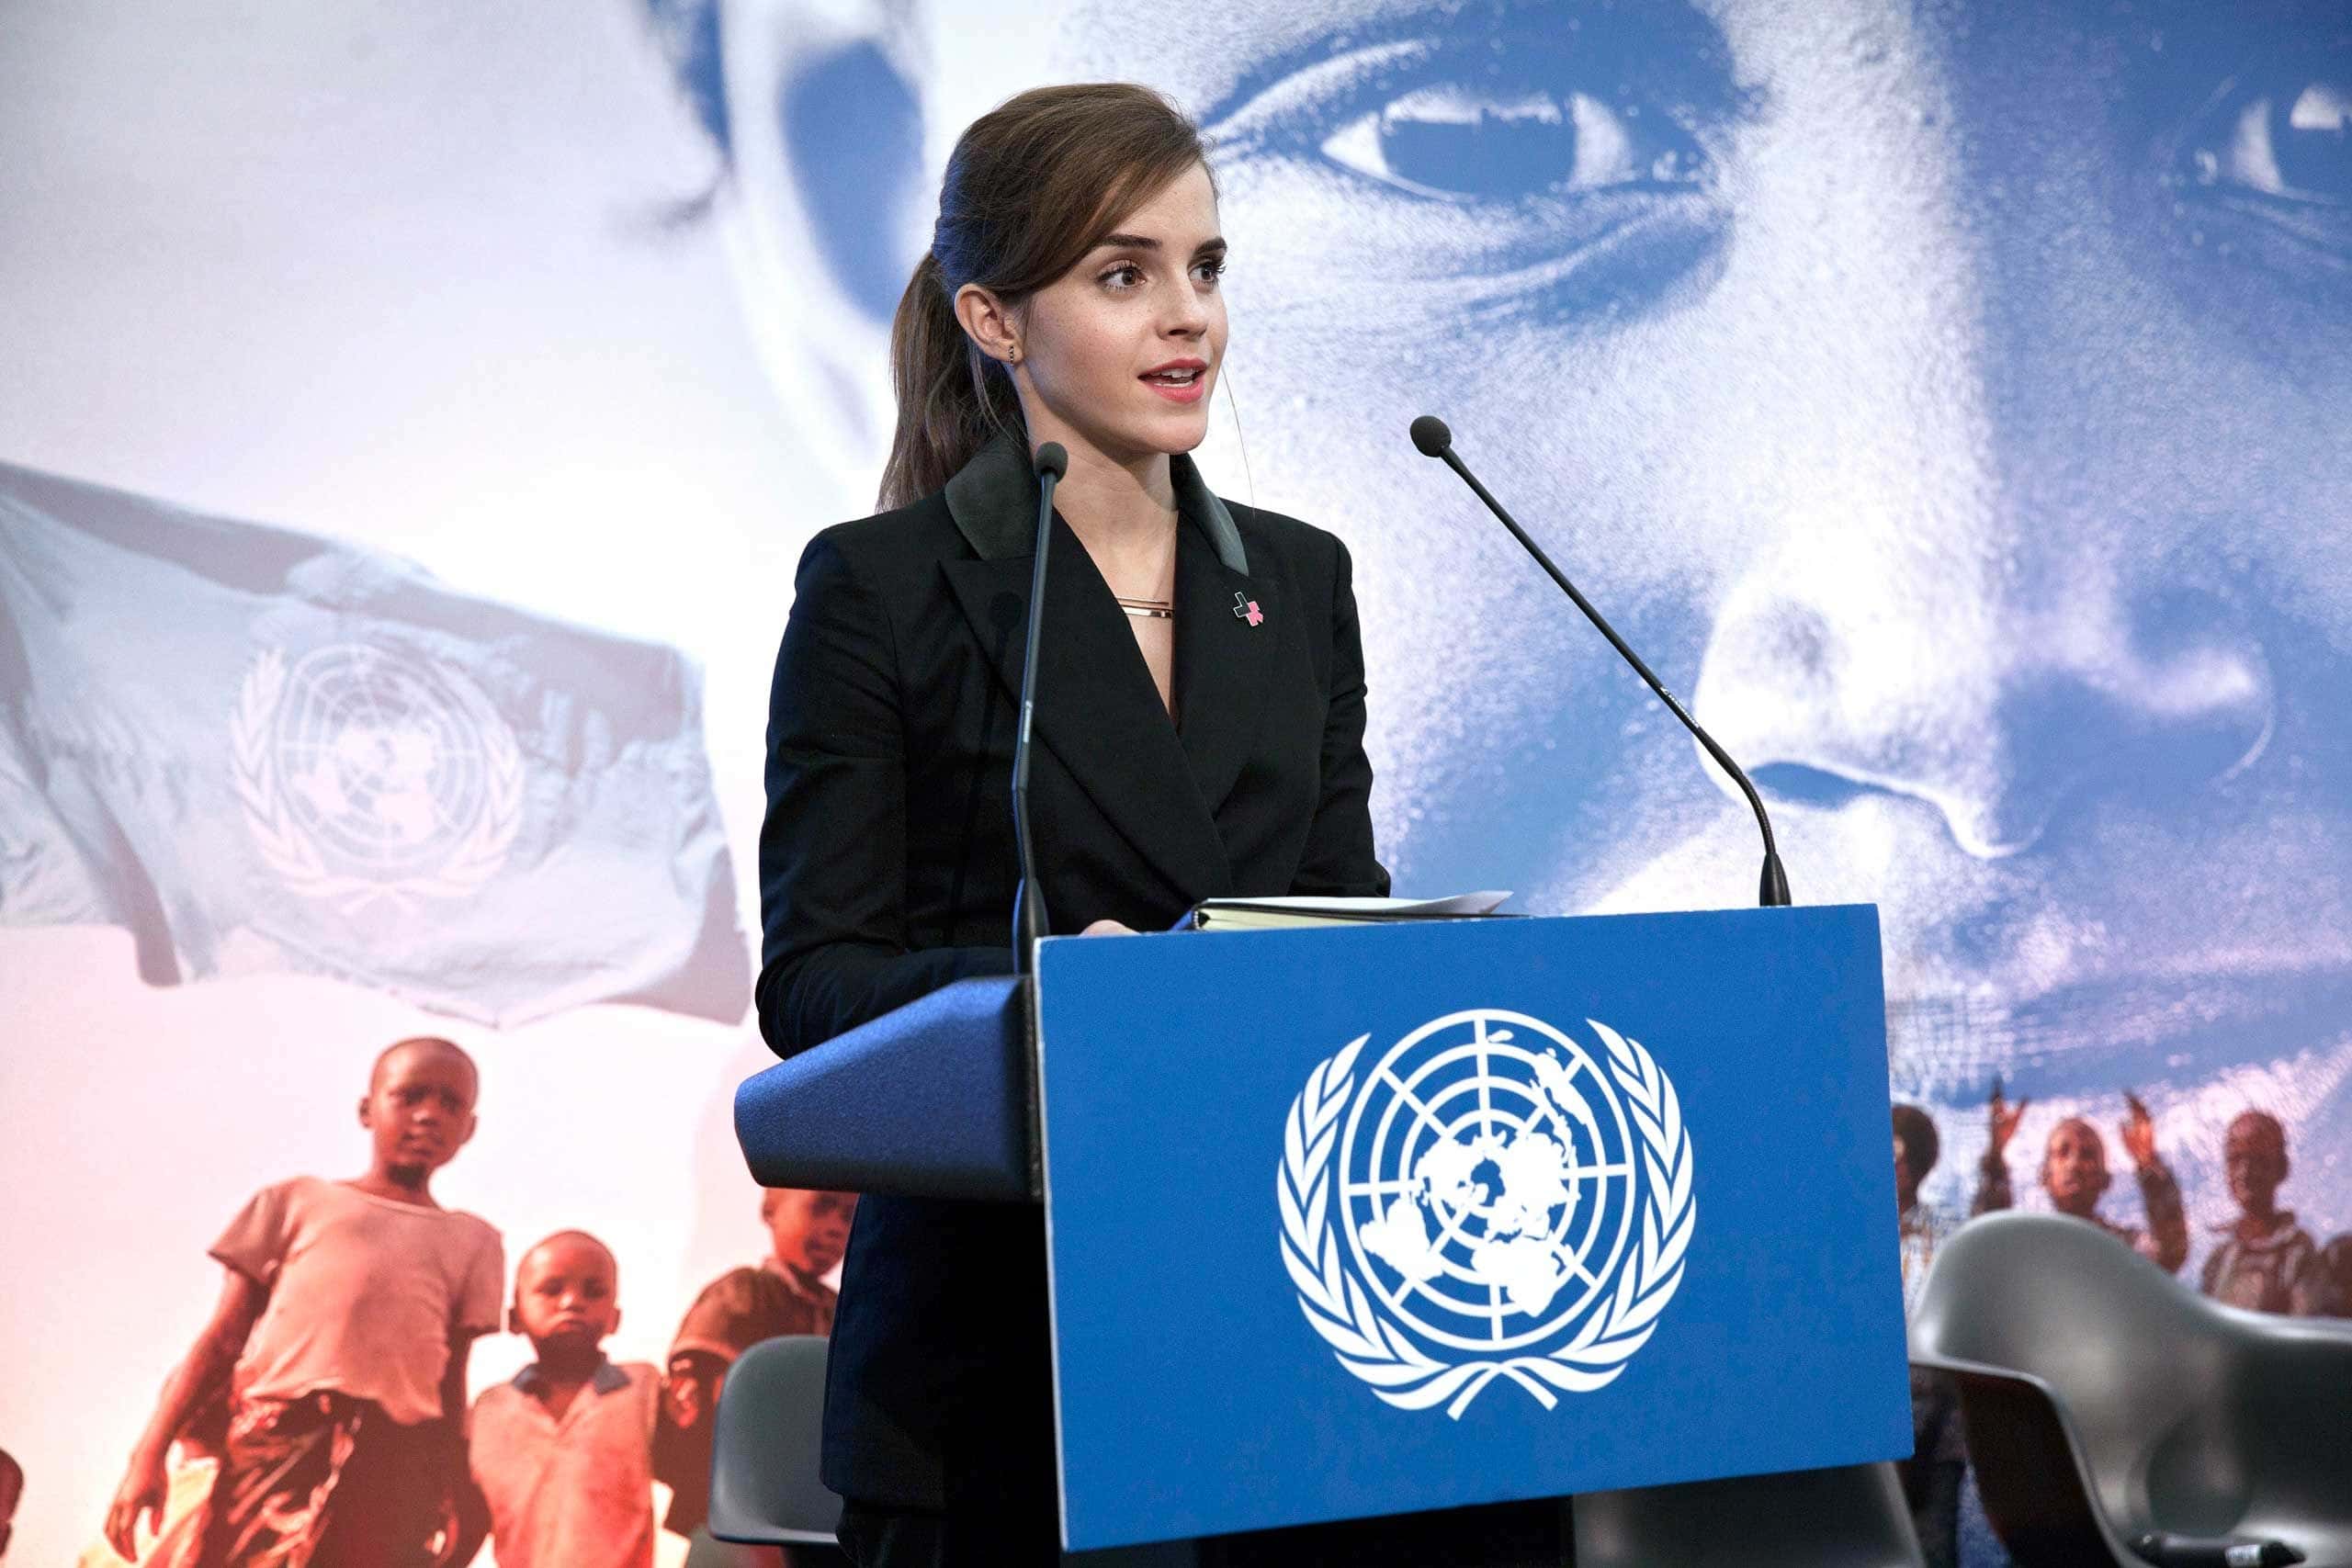 After Her Powerful UN Speech, Emma Watson Receives Threat 